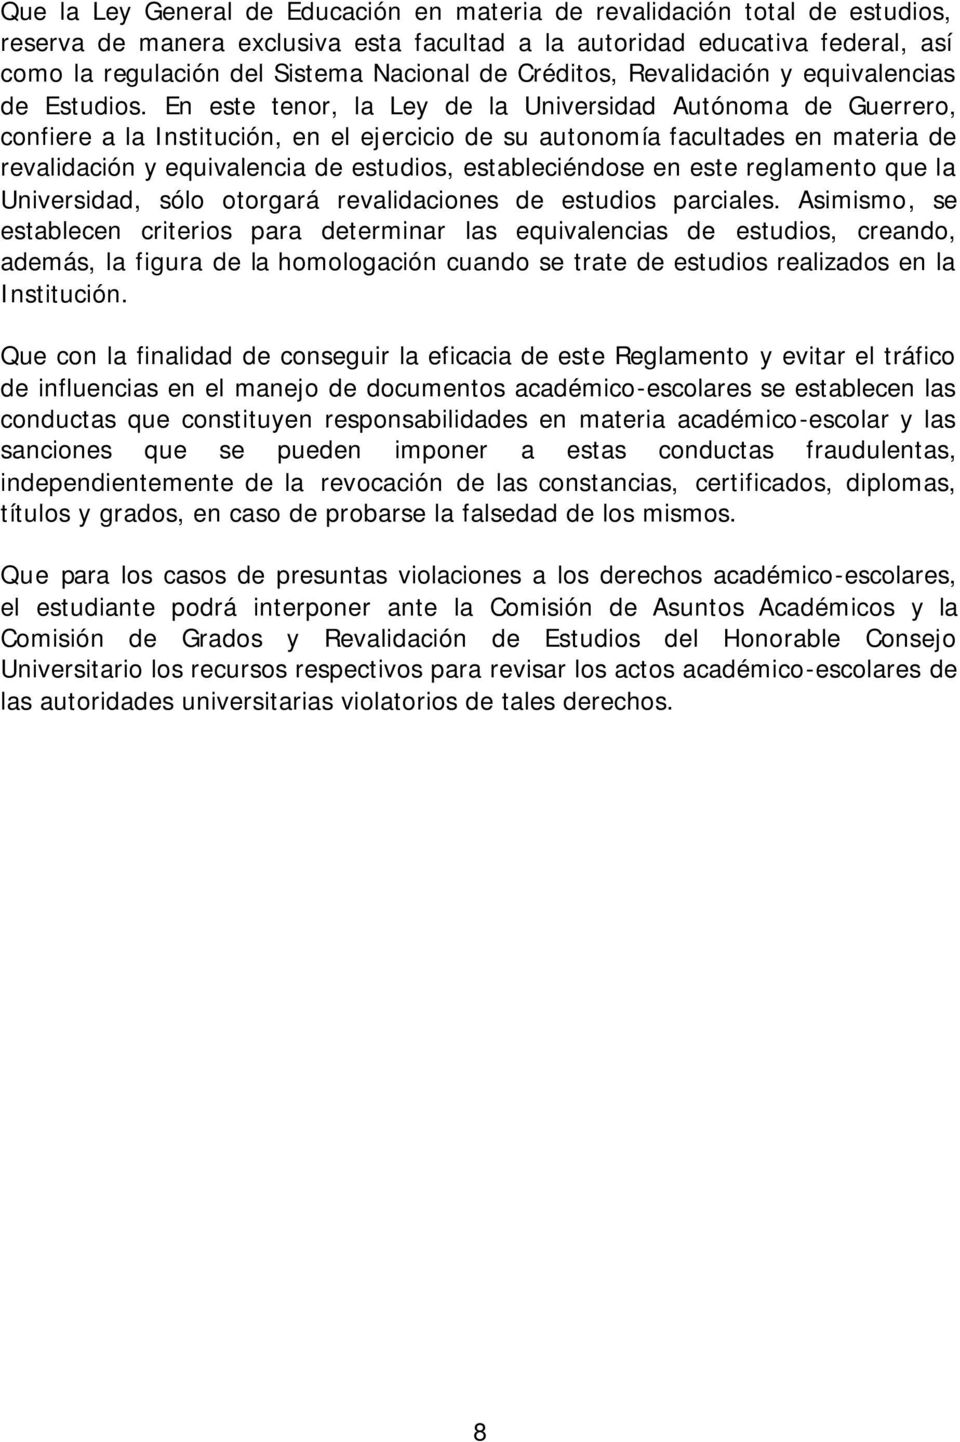 En este tenor, la Ley de la Universidad Autónoma de Guerrero, confiere a la Institución, en el ejercicio de su autonomía facultades en materia de revalidación y equivalencia de estudios,